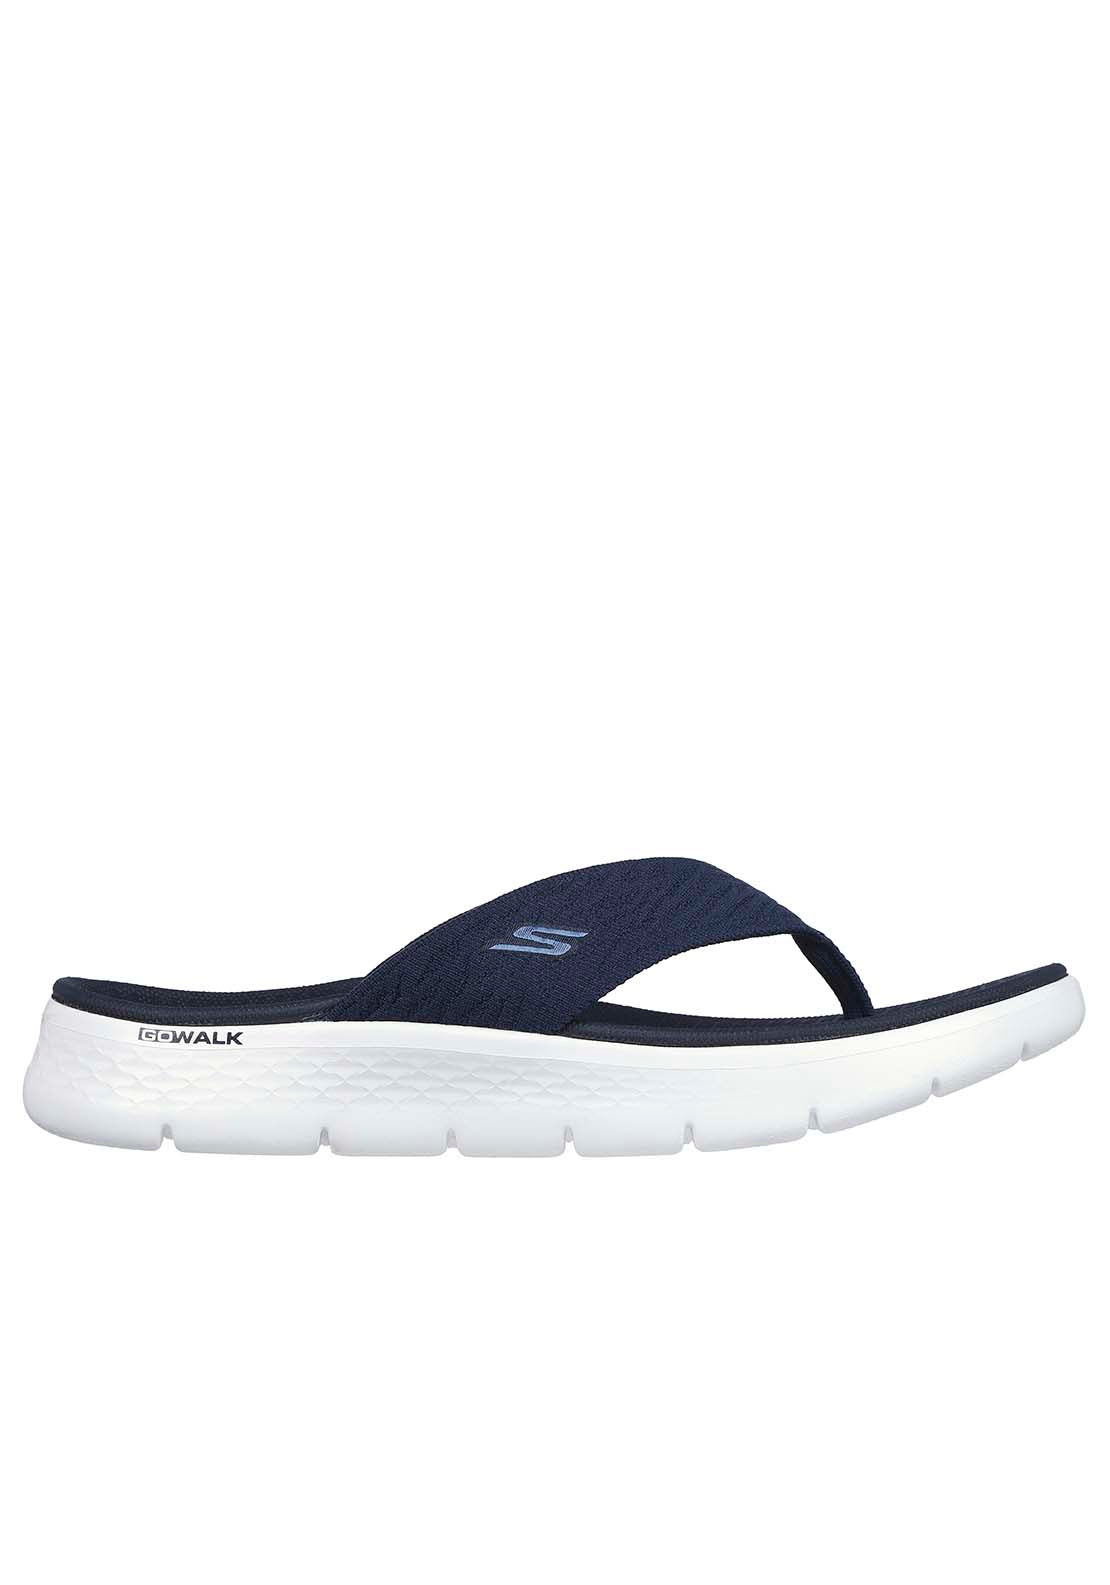 Skechers Go Walk Flex Sandal - Splendor - Navy 2 Shaws Department Stores